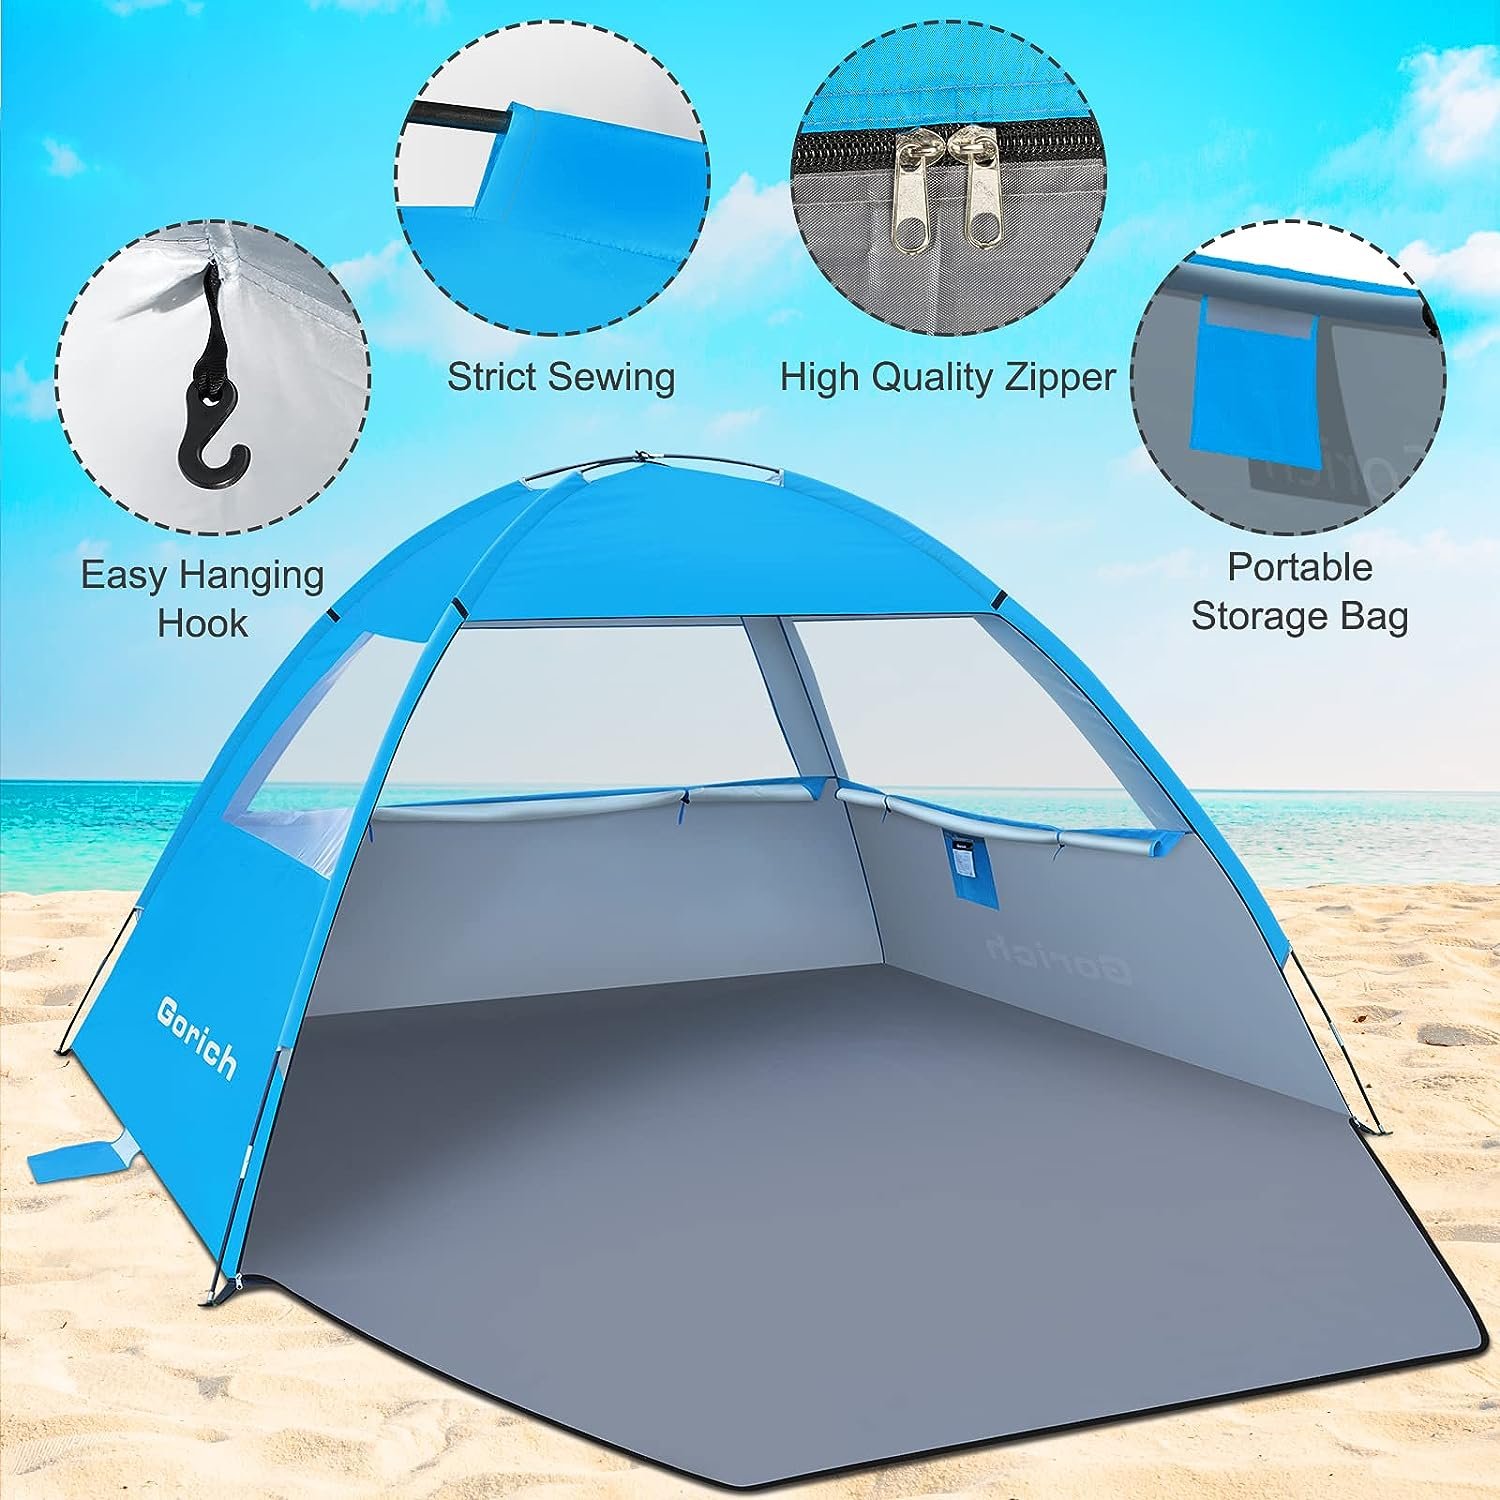 Gorich Beach Tent Review